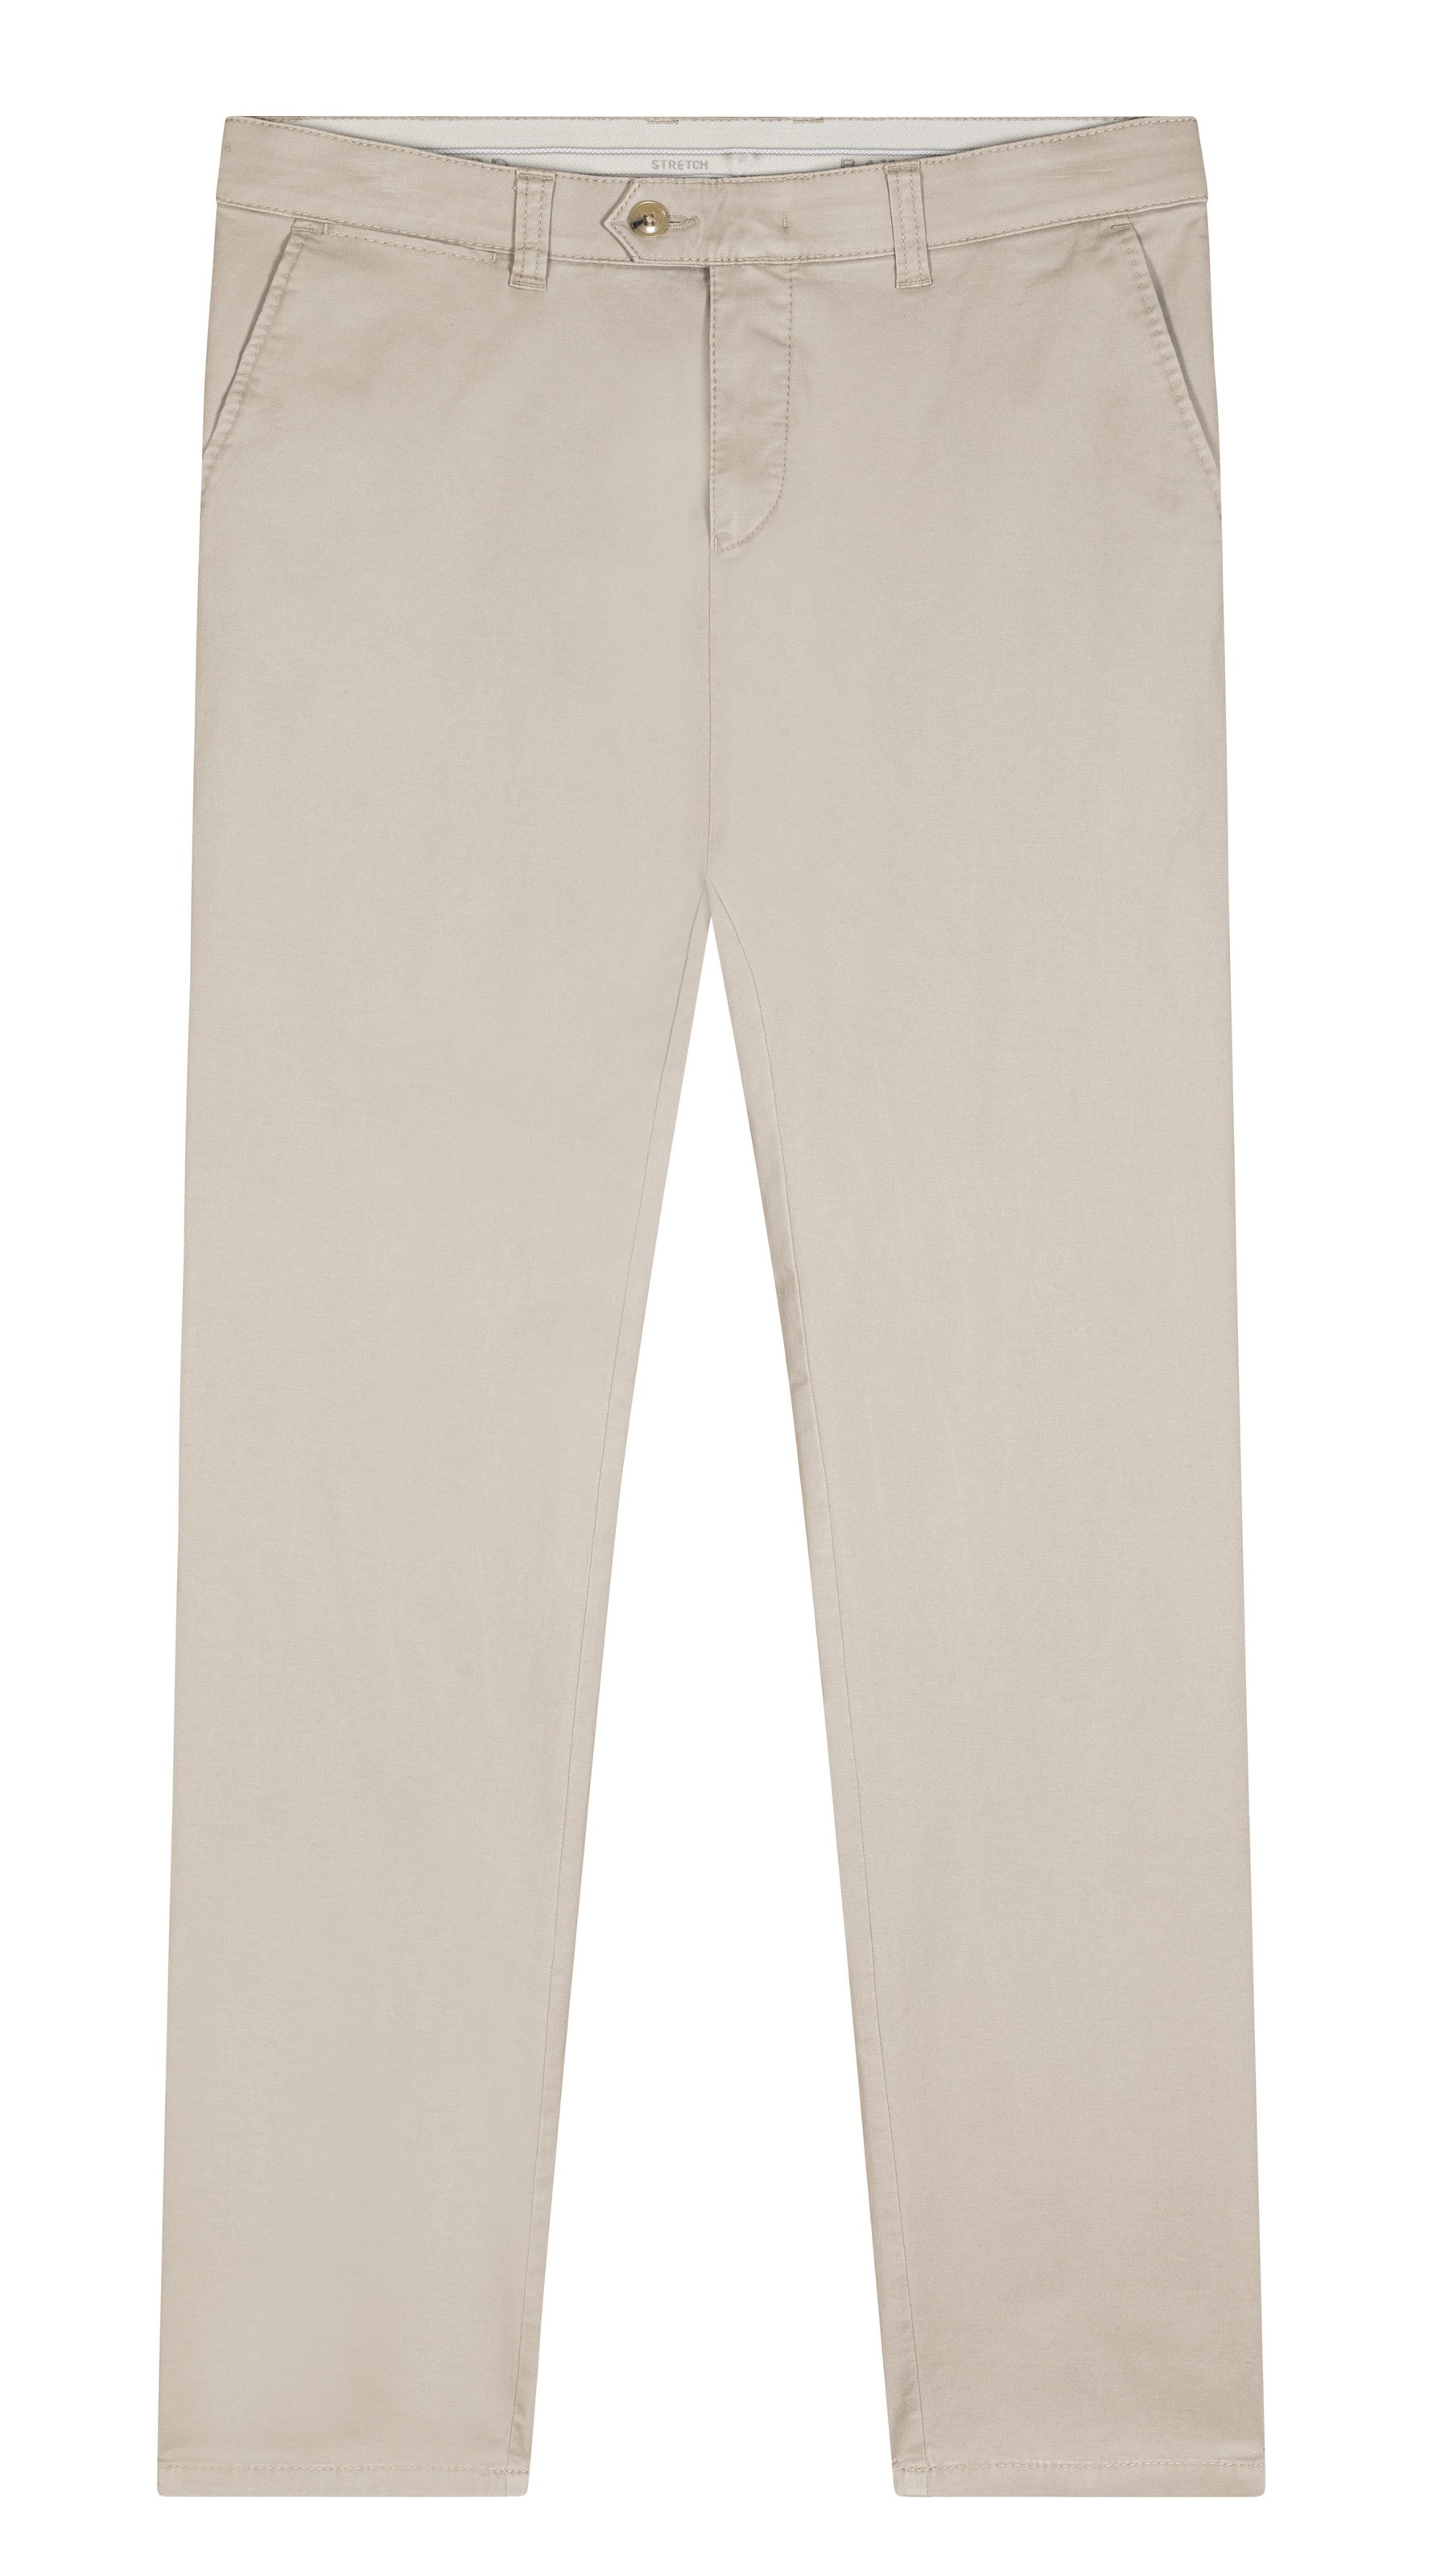 Pantalon toile coupe slim en coton uni beige